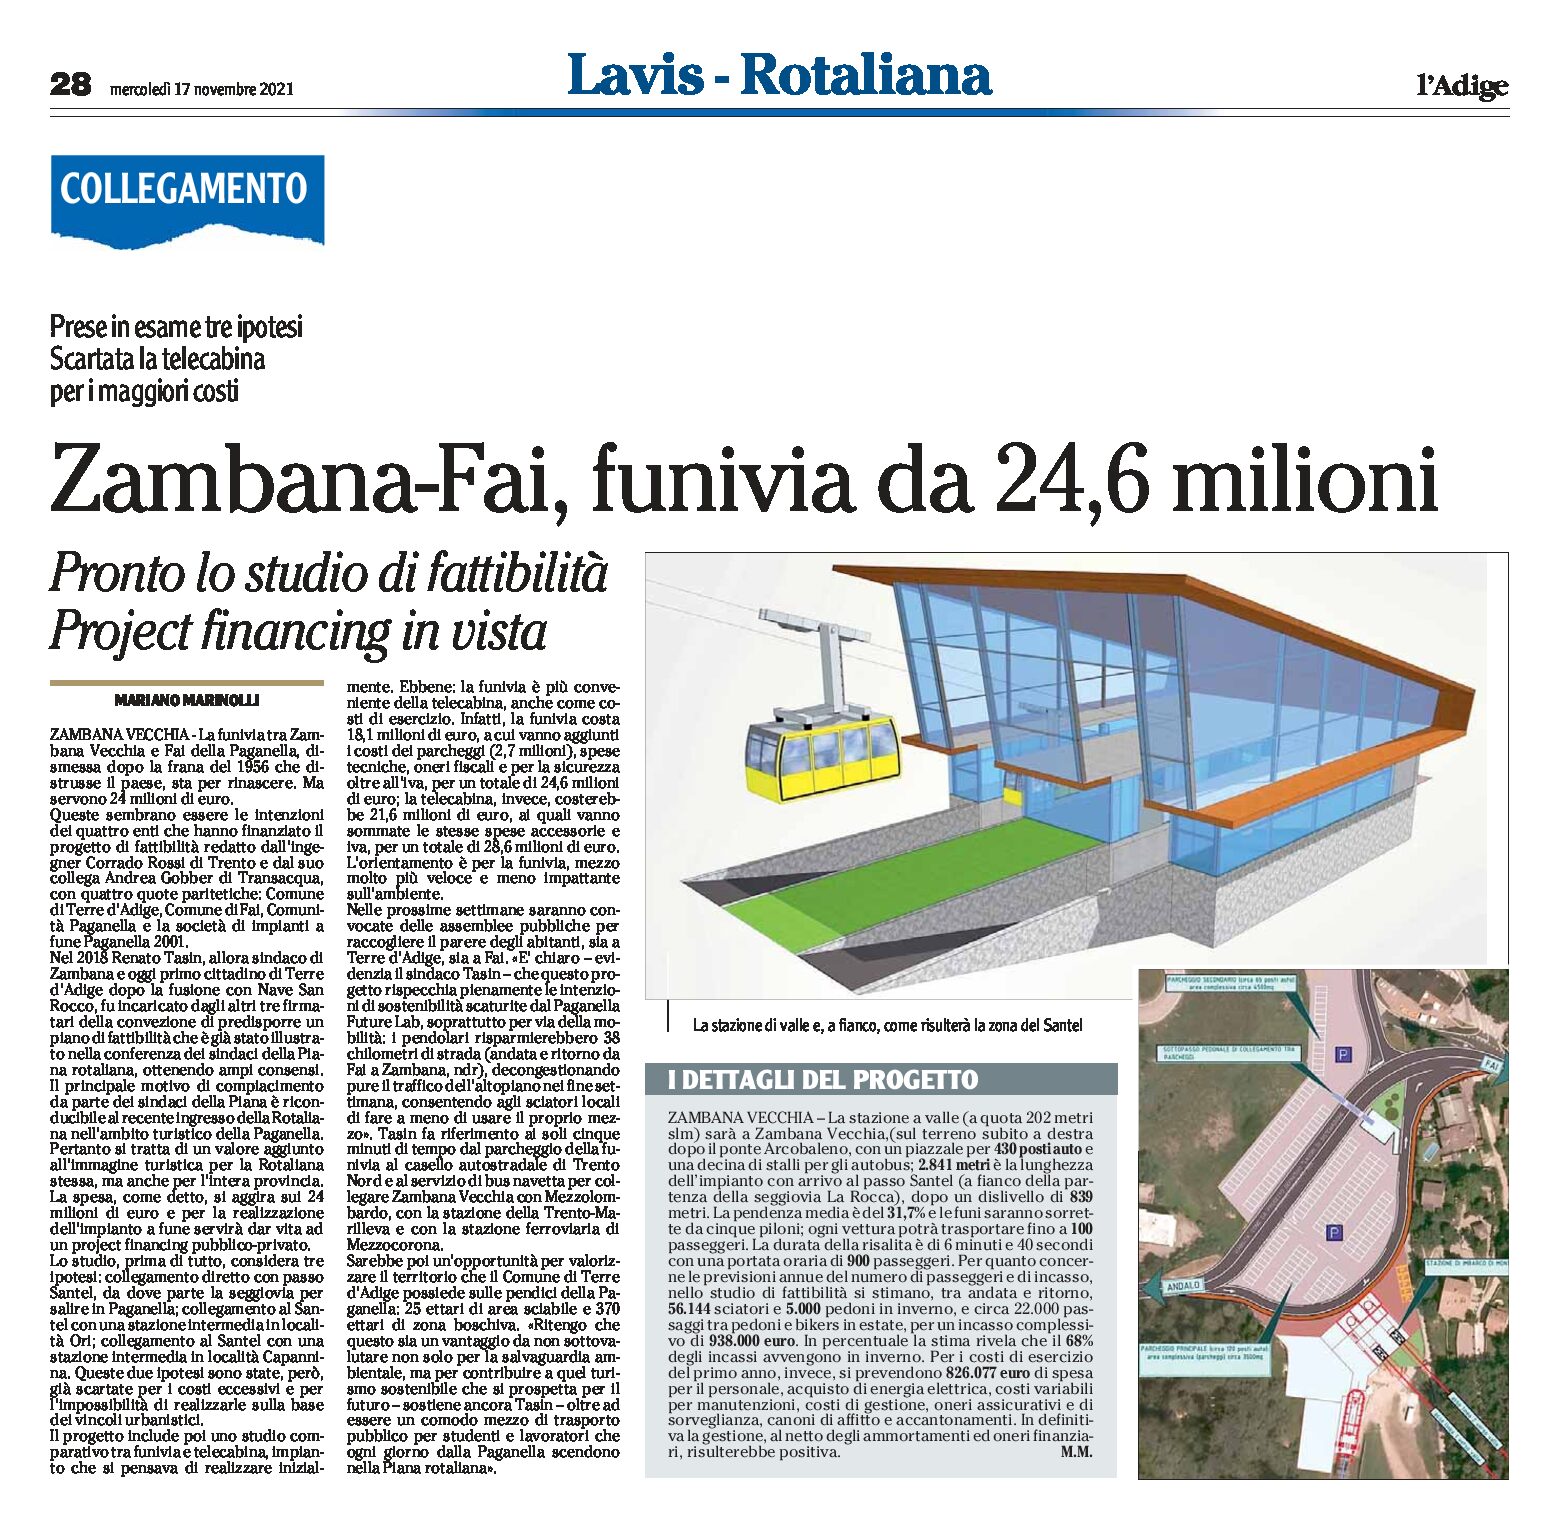 Zambana-Fai: funivia da 24,6 milioni. Pronto lo studio di fattibilità. Projet financing in vista